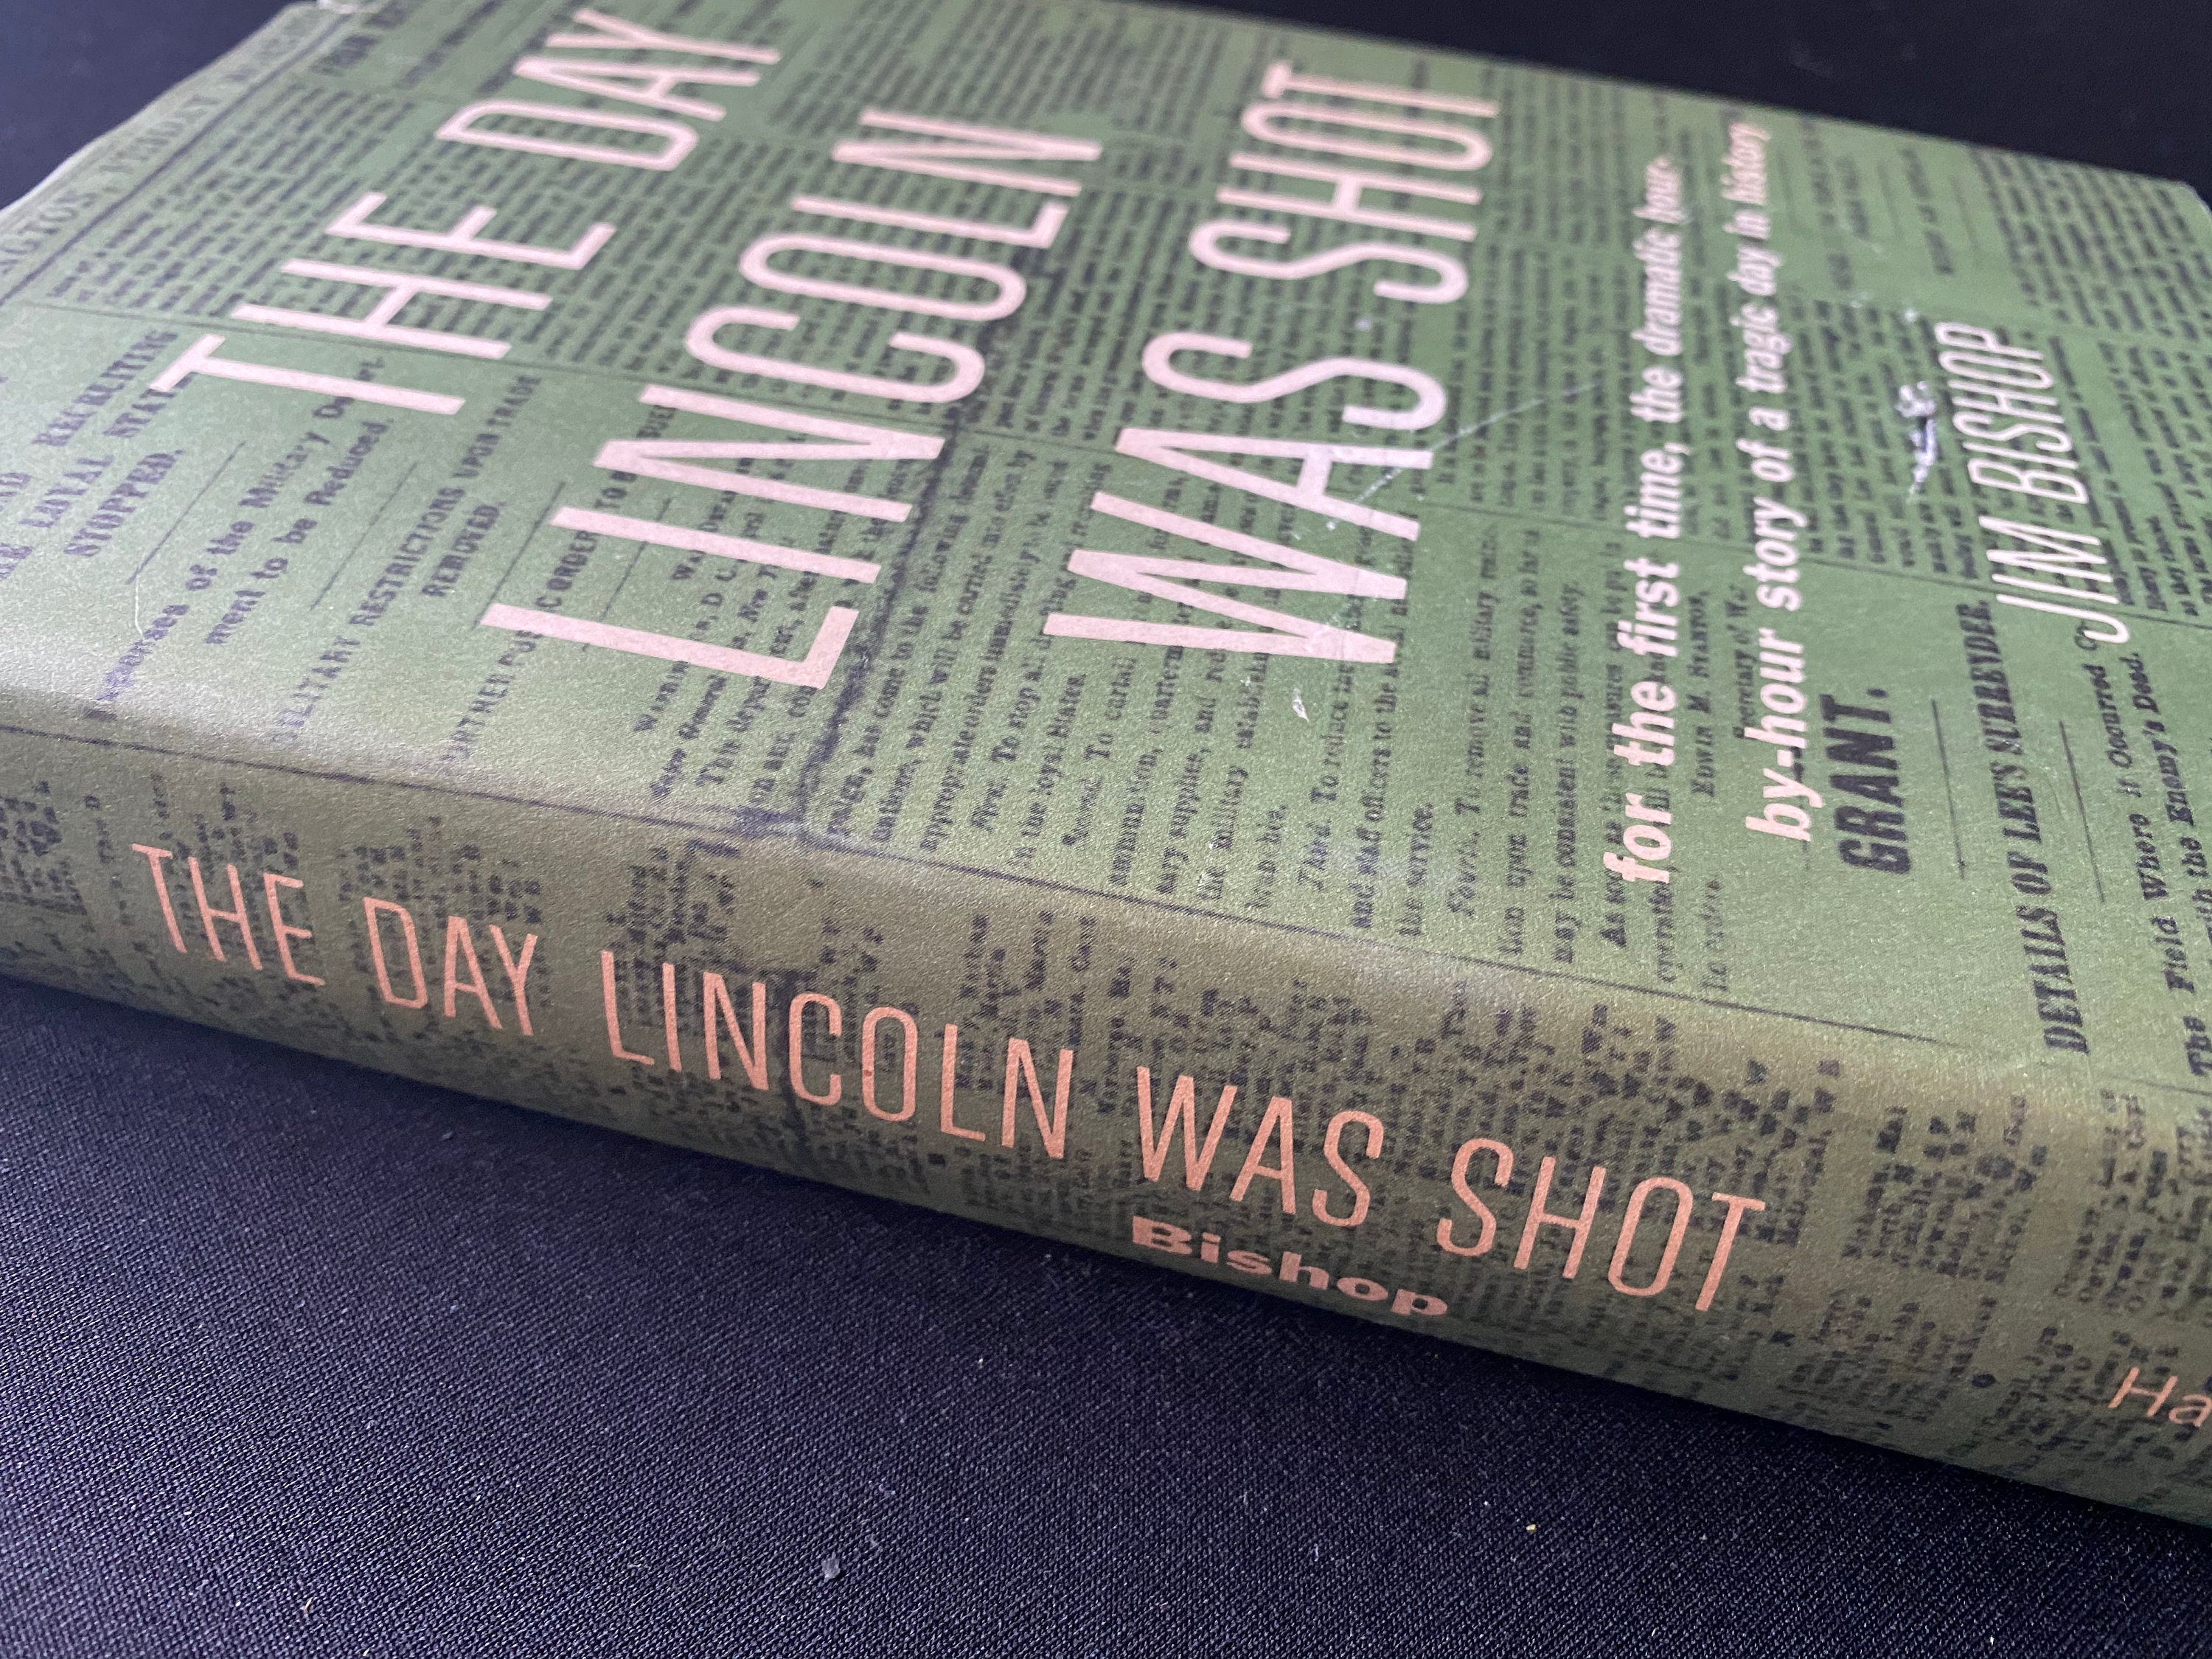 Rare Lincoln Book - Etsy